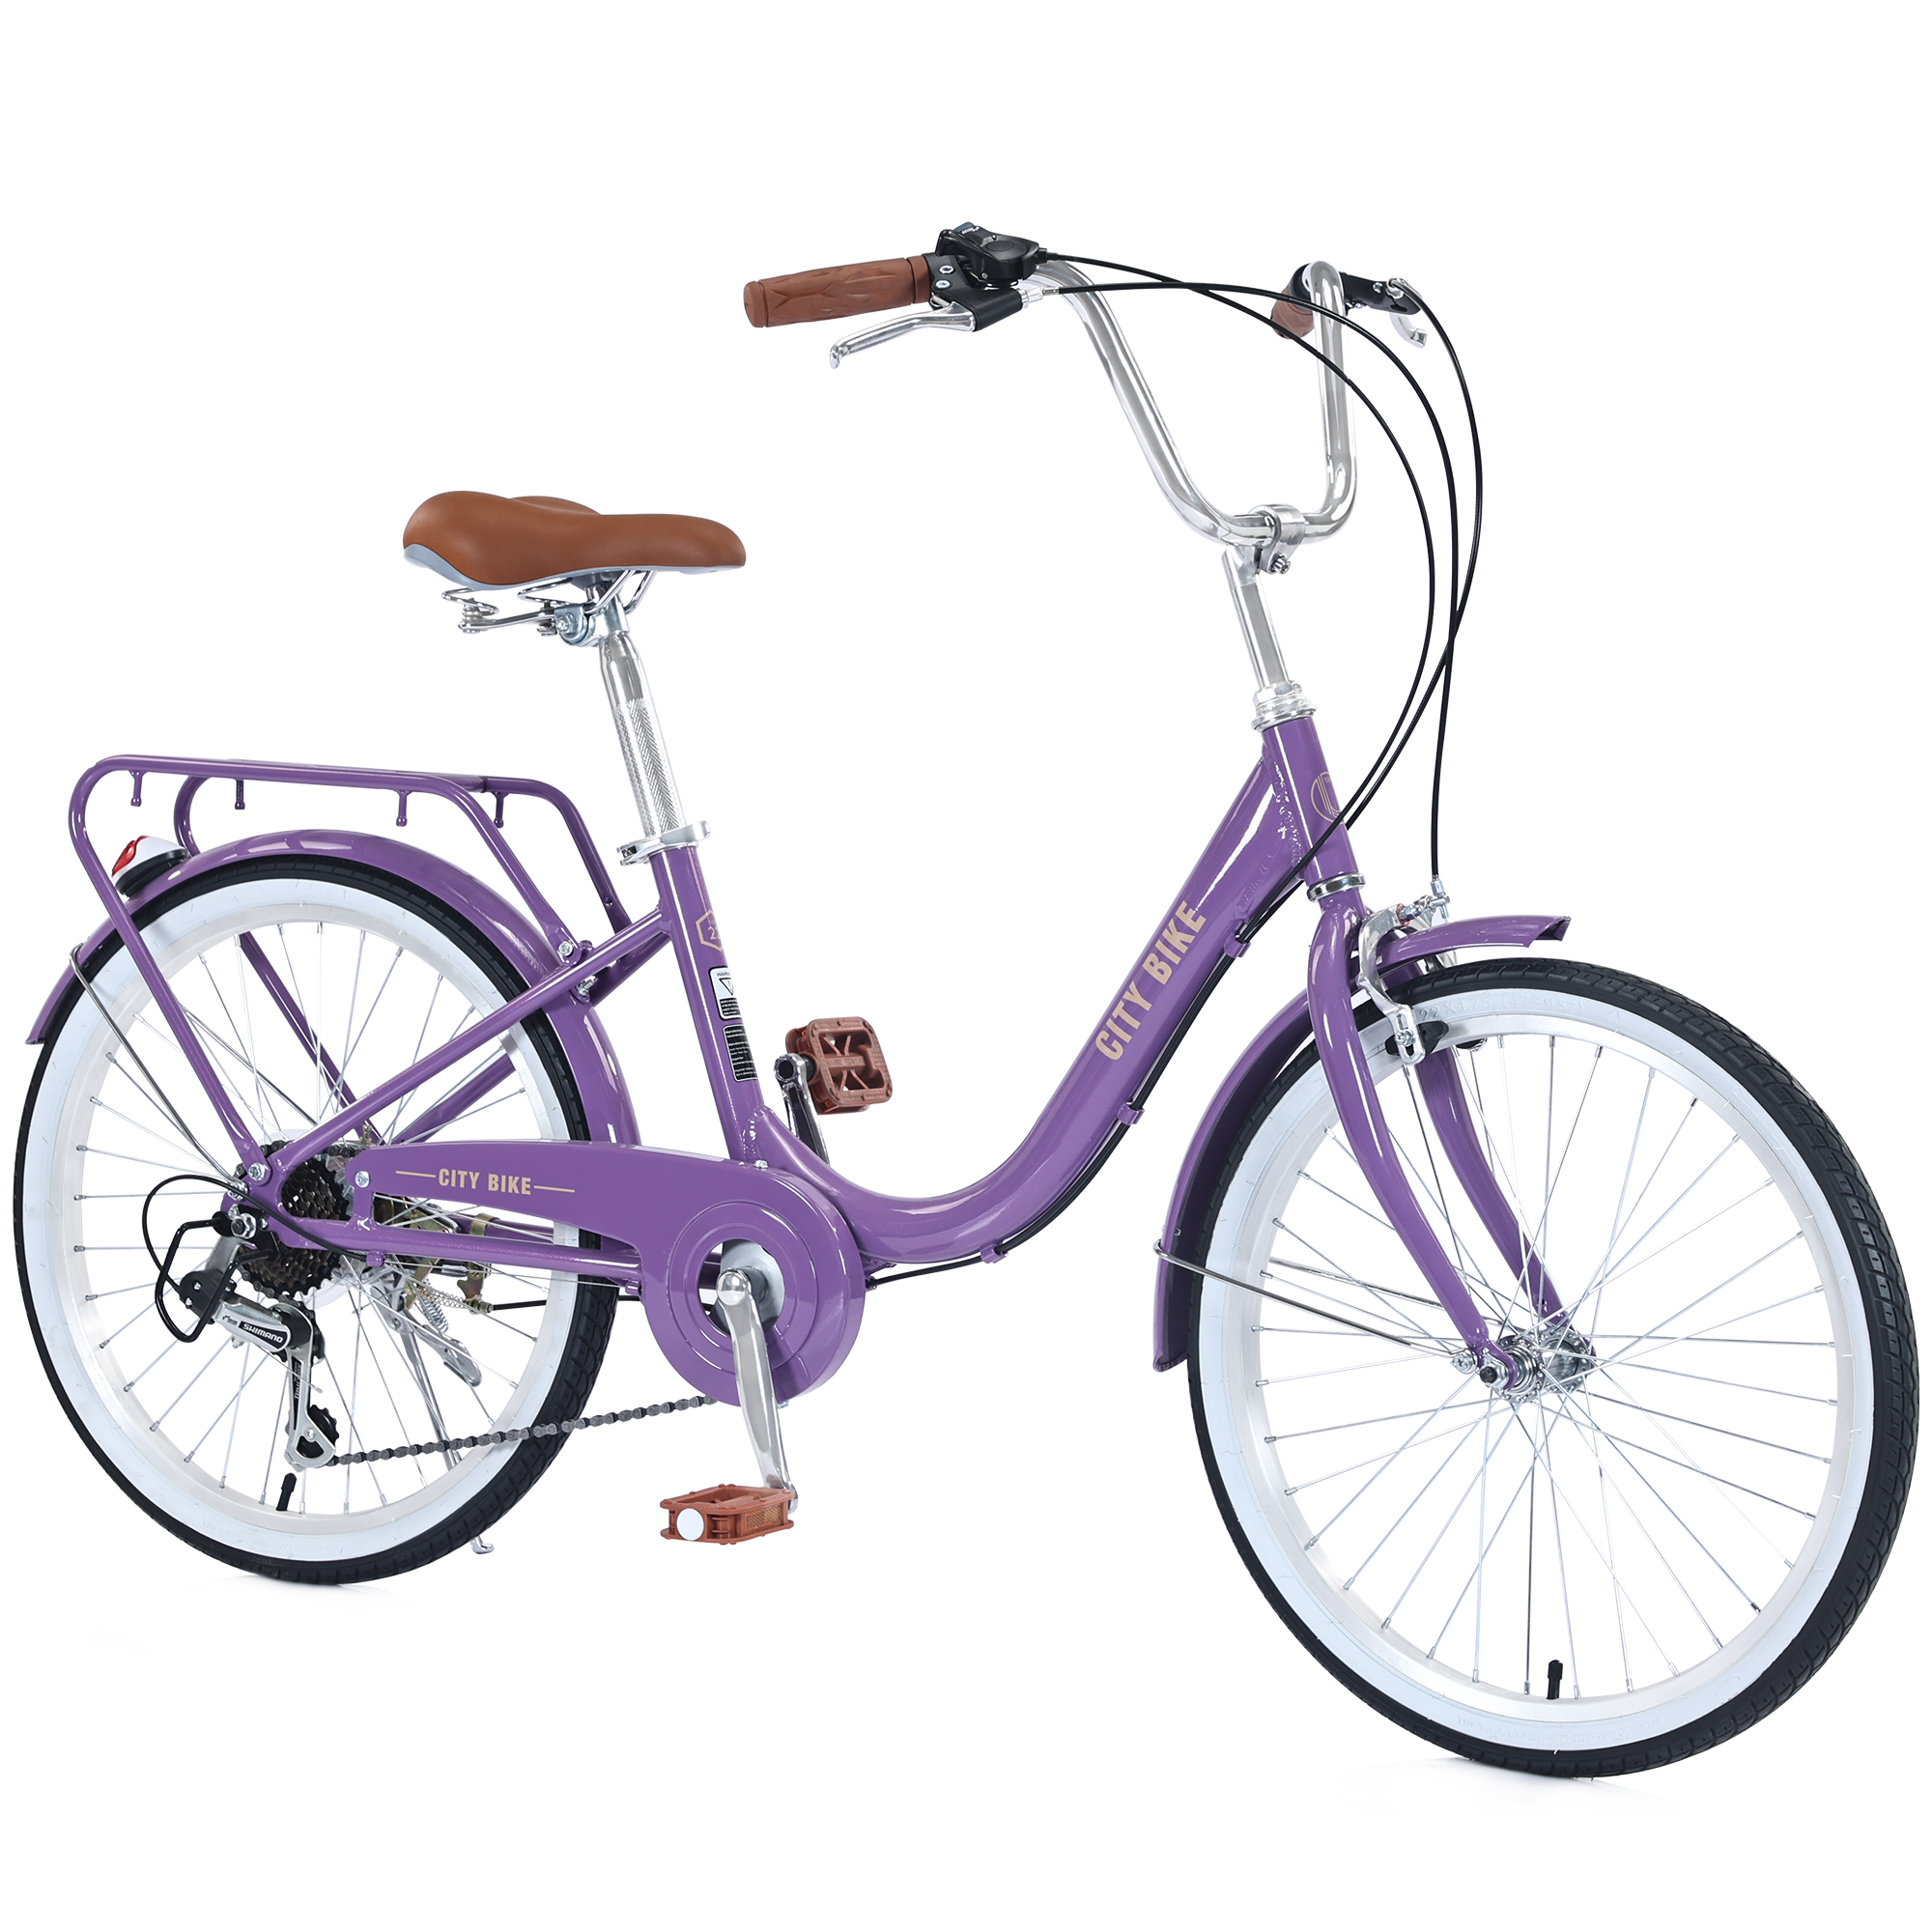 22 Inch Girls Bicycle 7 Speed Aluminium Alloy Beach Cruiser Bike